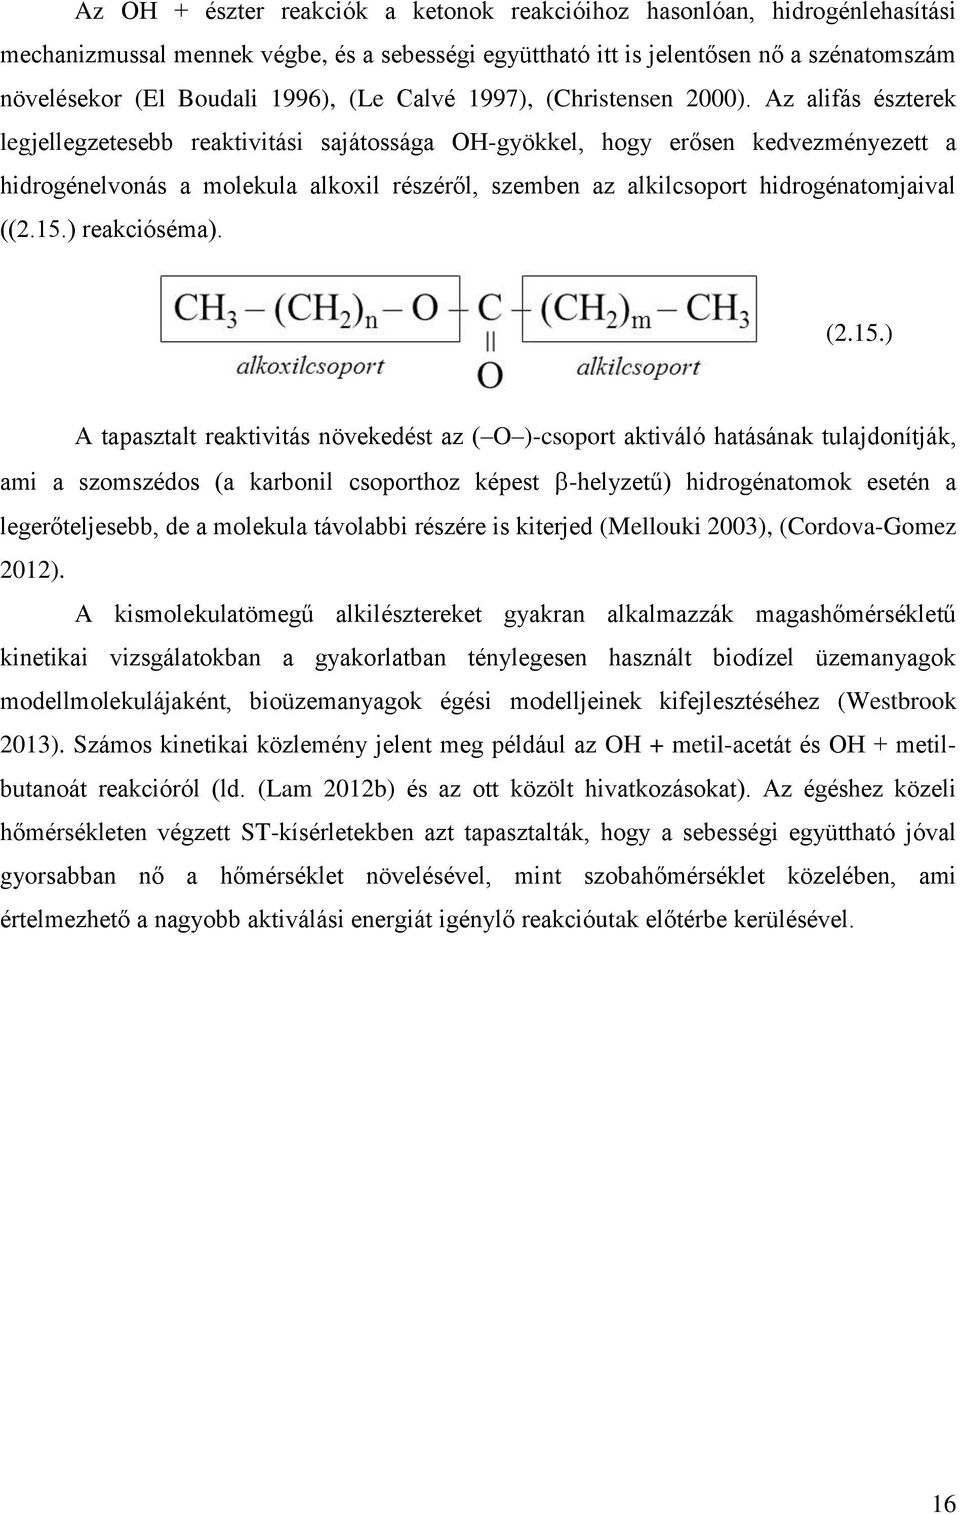 Az alifás észterek legjellegzetesebb reaktivitási sajátossága OH-gyökkel, hogy erősen kedvezményezett a hidrogénelvonás a molekula alkoxil részéről, szemben az alkilcsoport hidrogénatomjaival ((2.15.